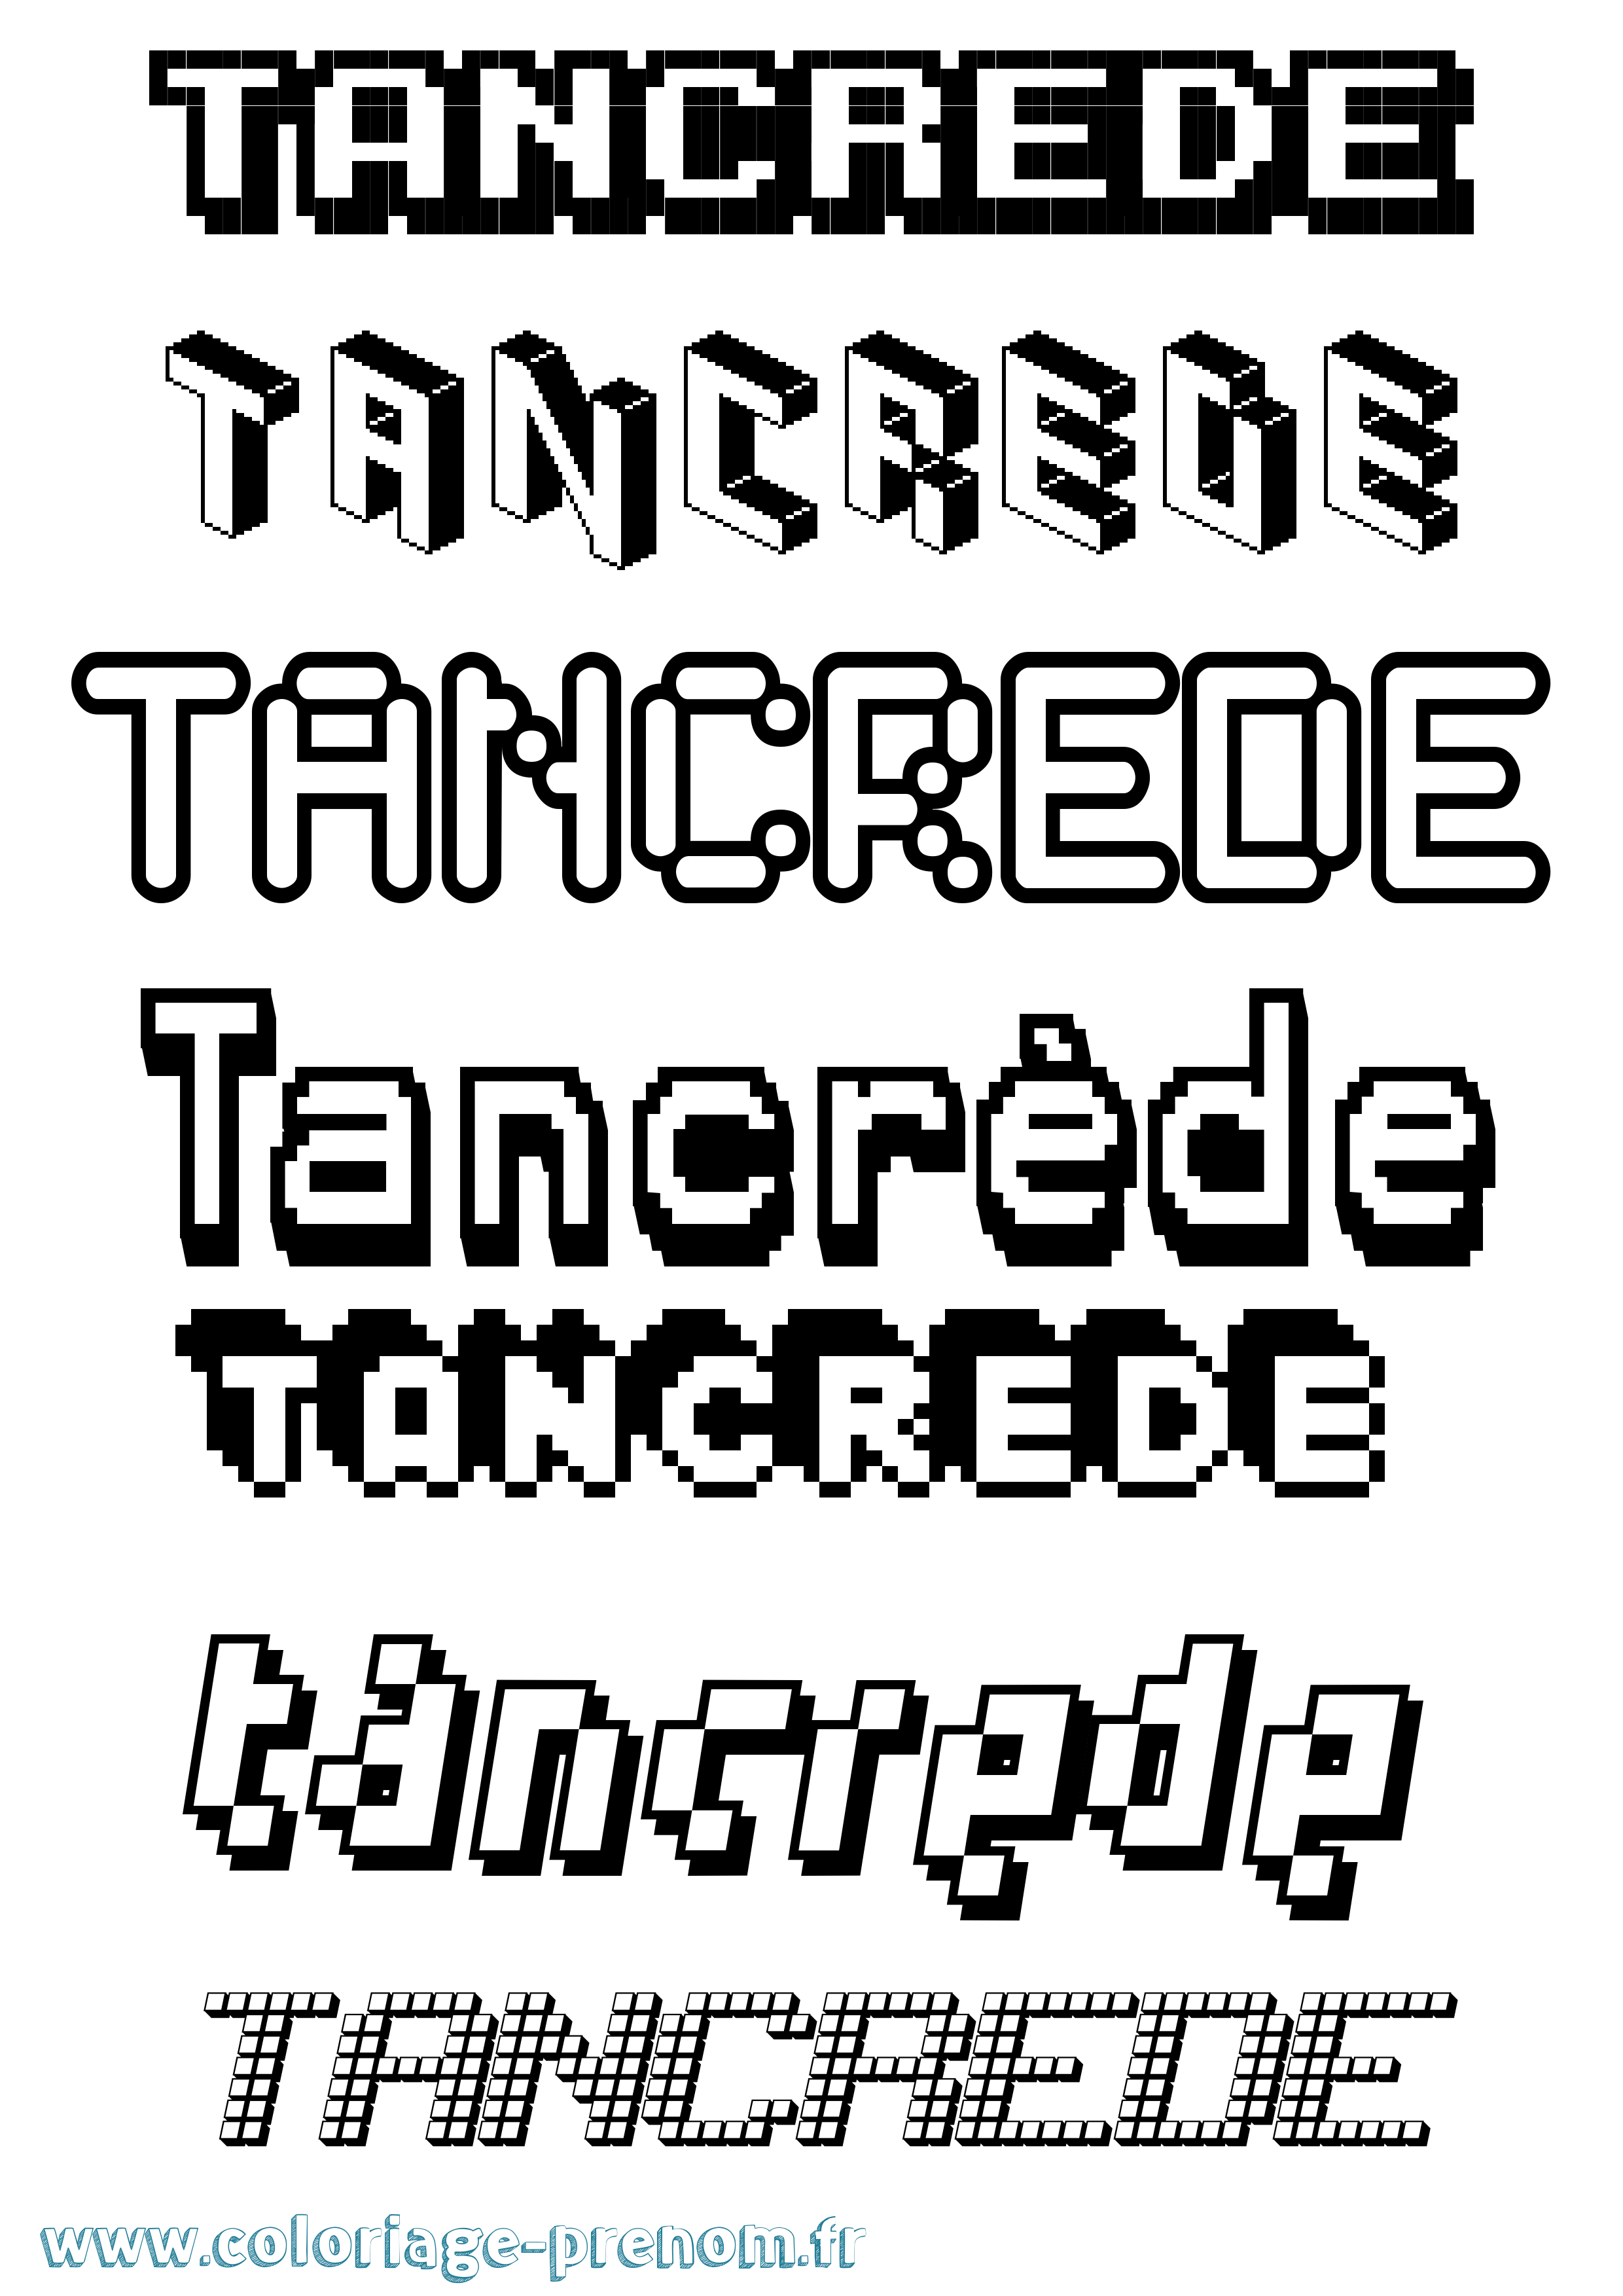 Coloriage prénom Tancrède Pixel